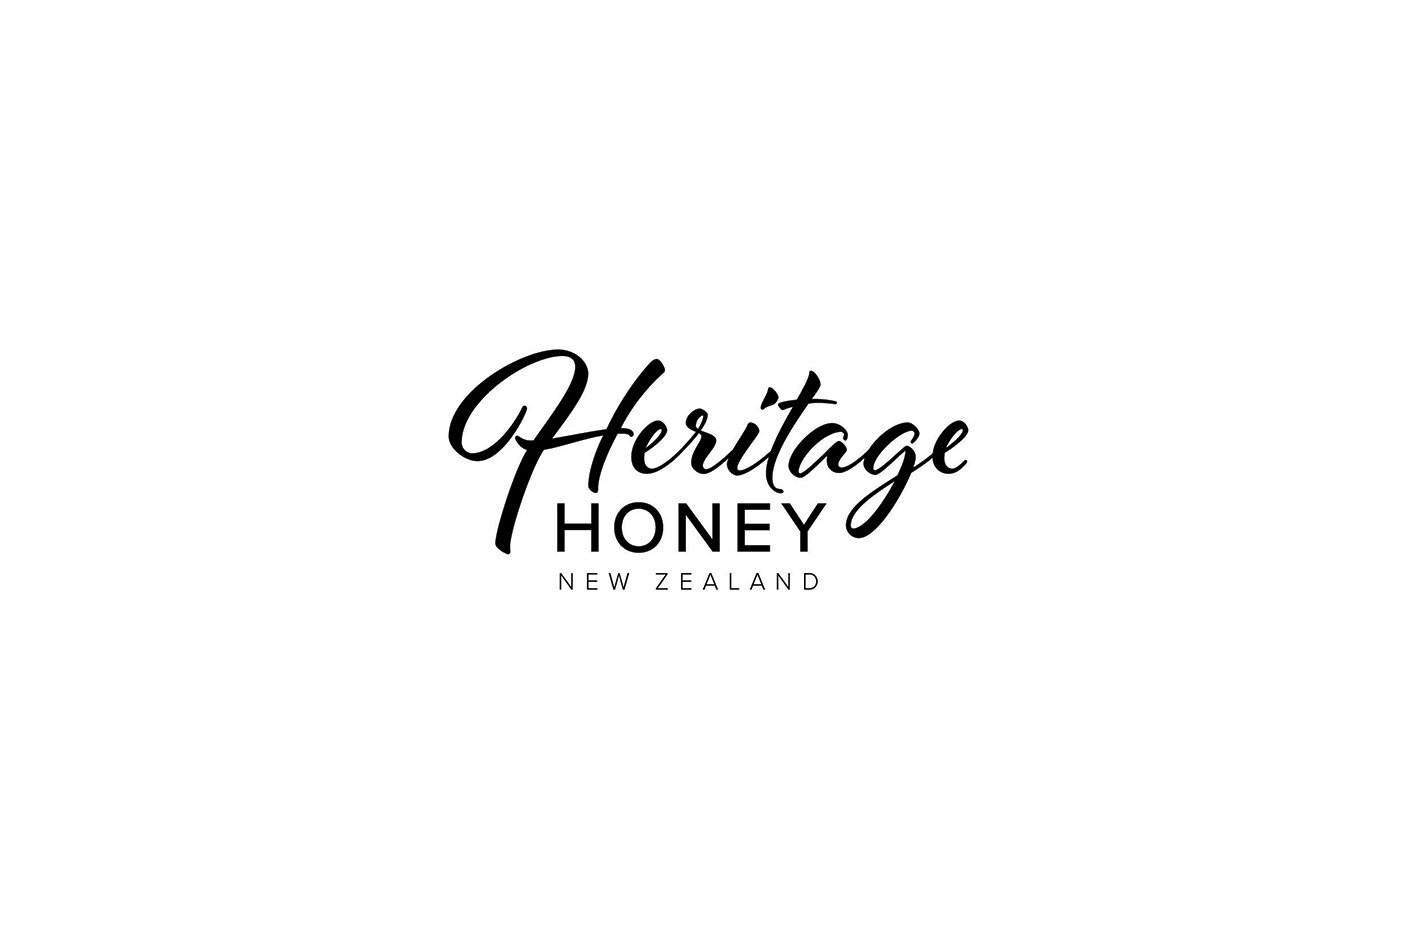 Heritage Honey New Zealand – Branding